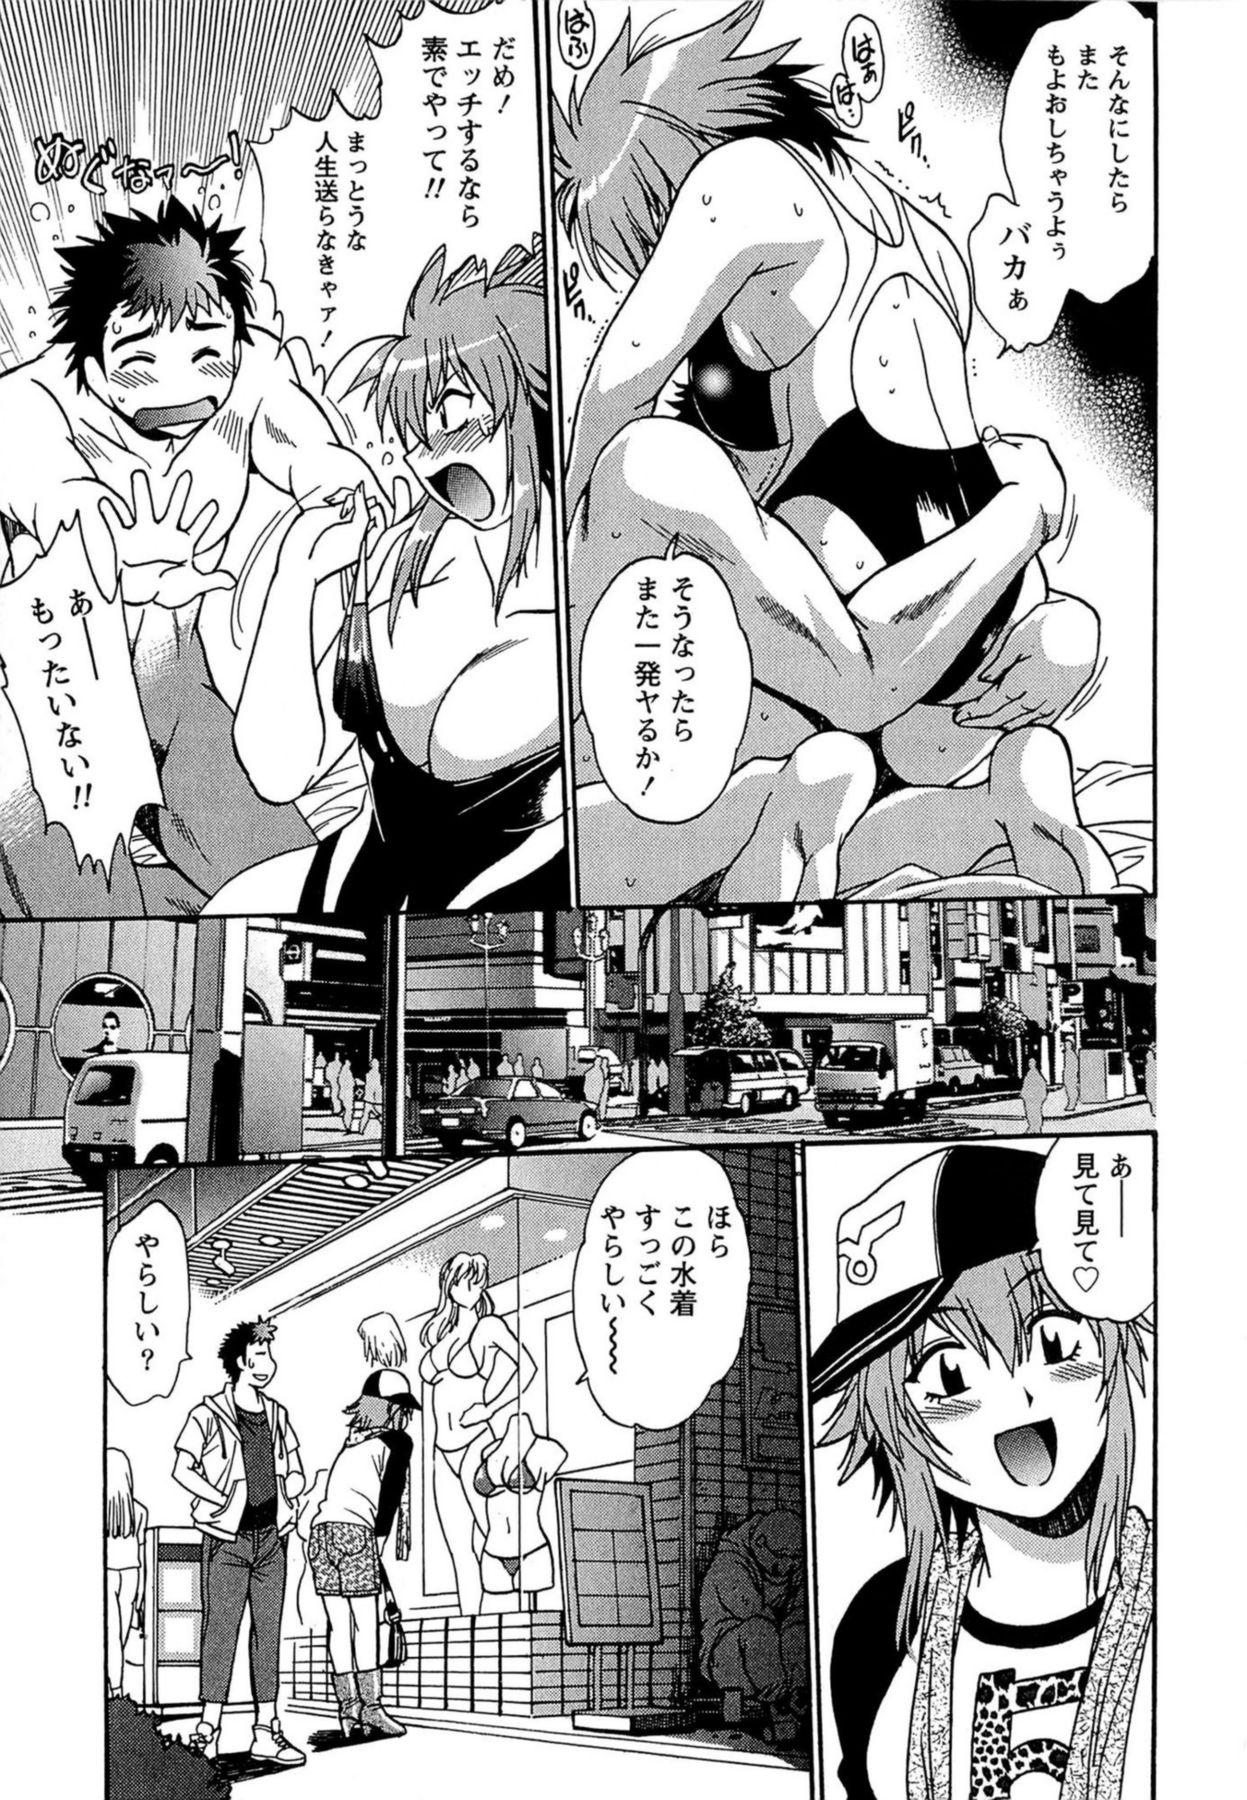 Kuikomi wo Naoshiteru Hima wa Nai! Vol. 1 223